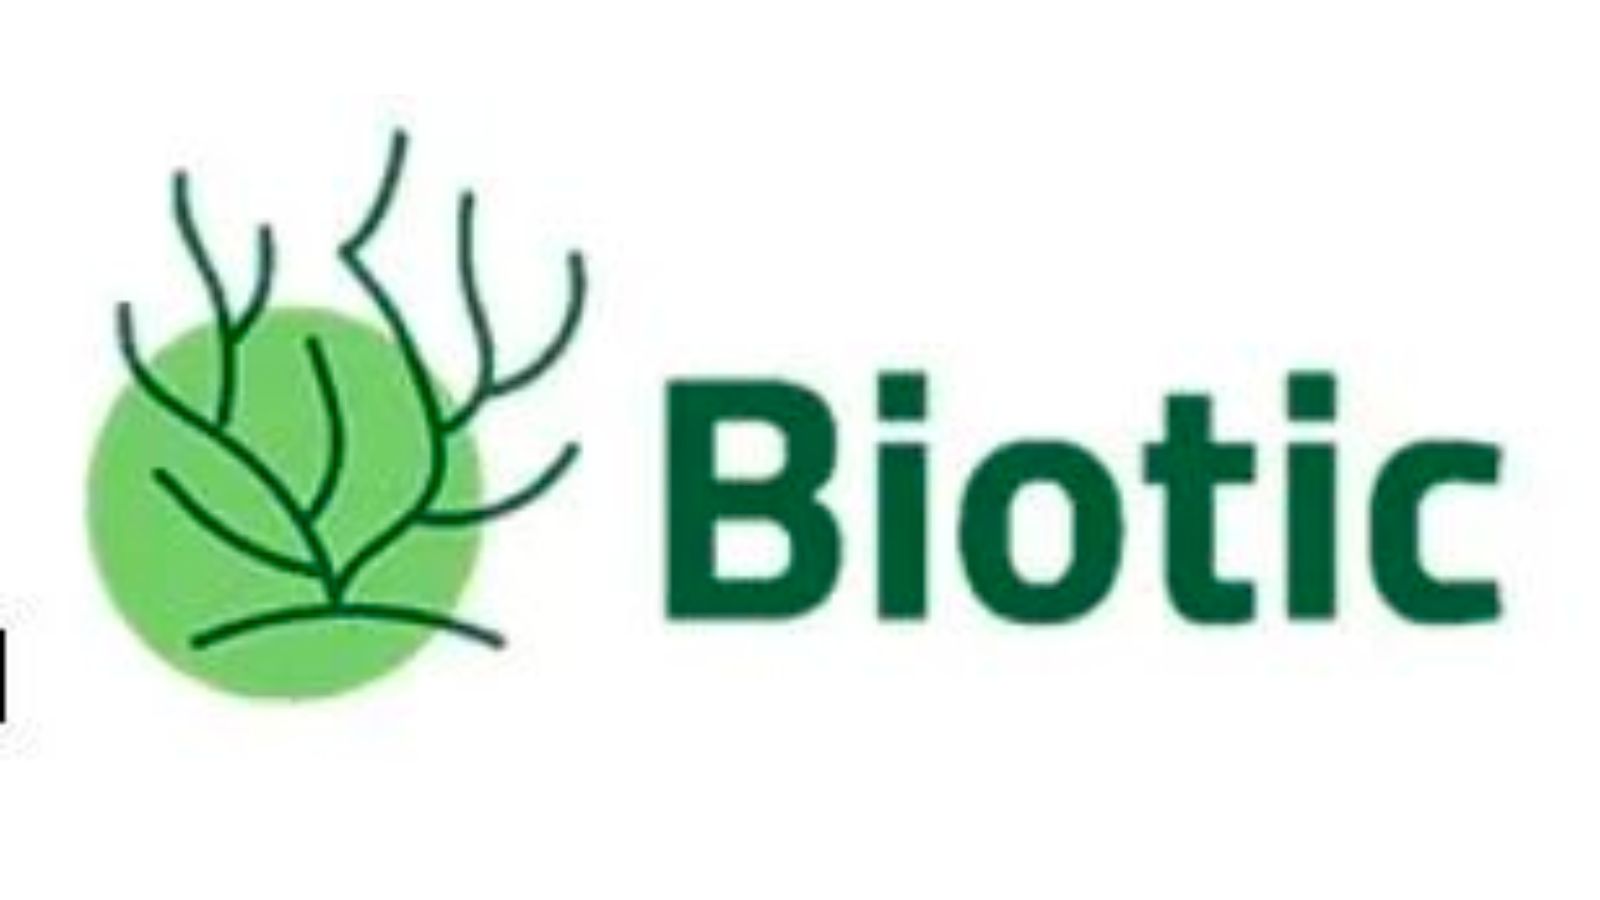 Biotic,提供完全生物基和可生物降解的聚合物制造工艺